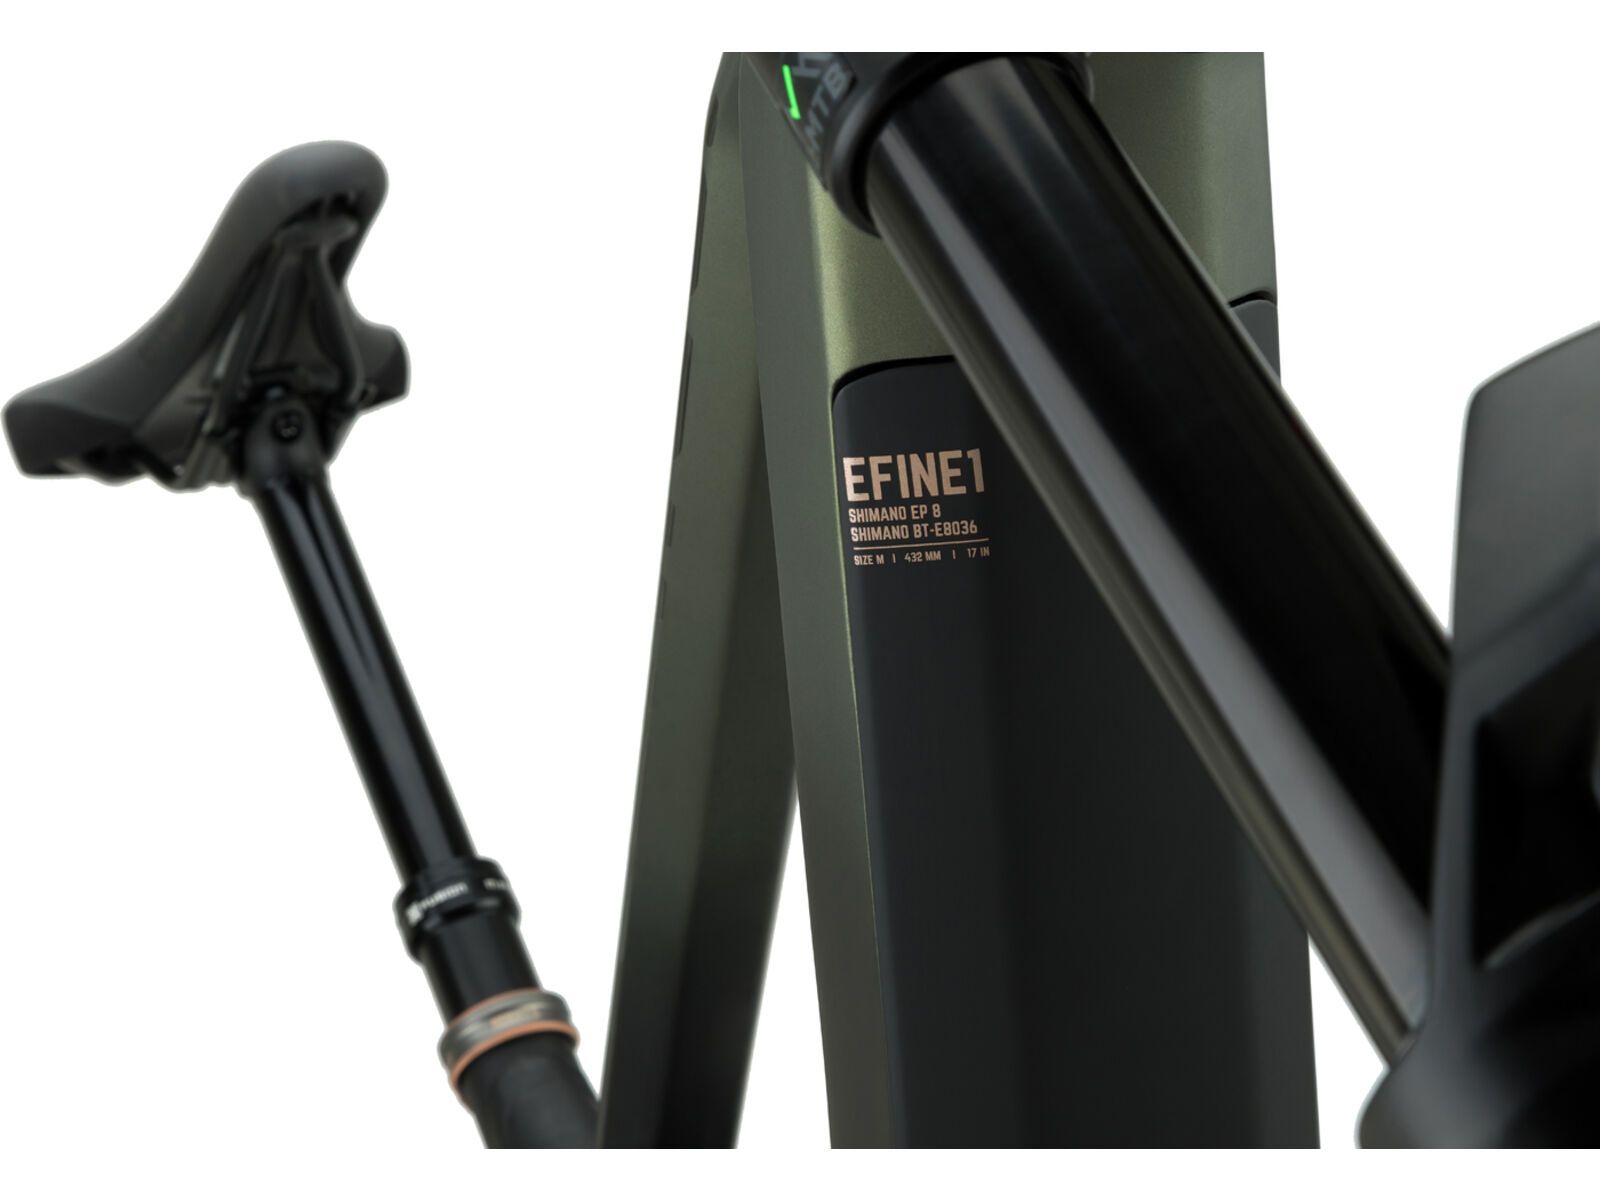 NS Bikes E-Fine 1 - Shimano Deore Bremsen, black/green | Bild 8